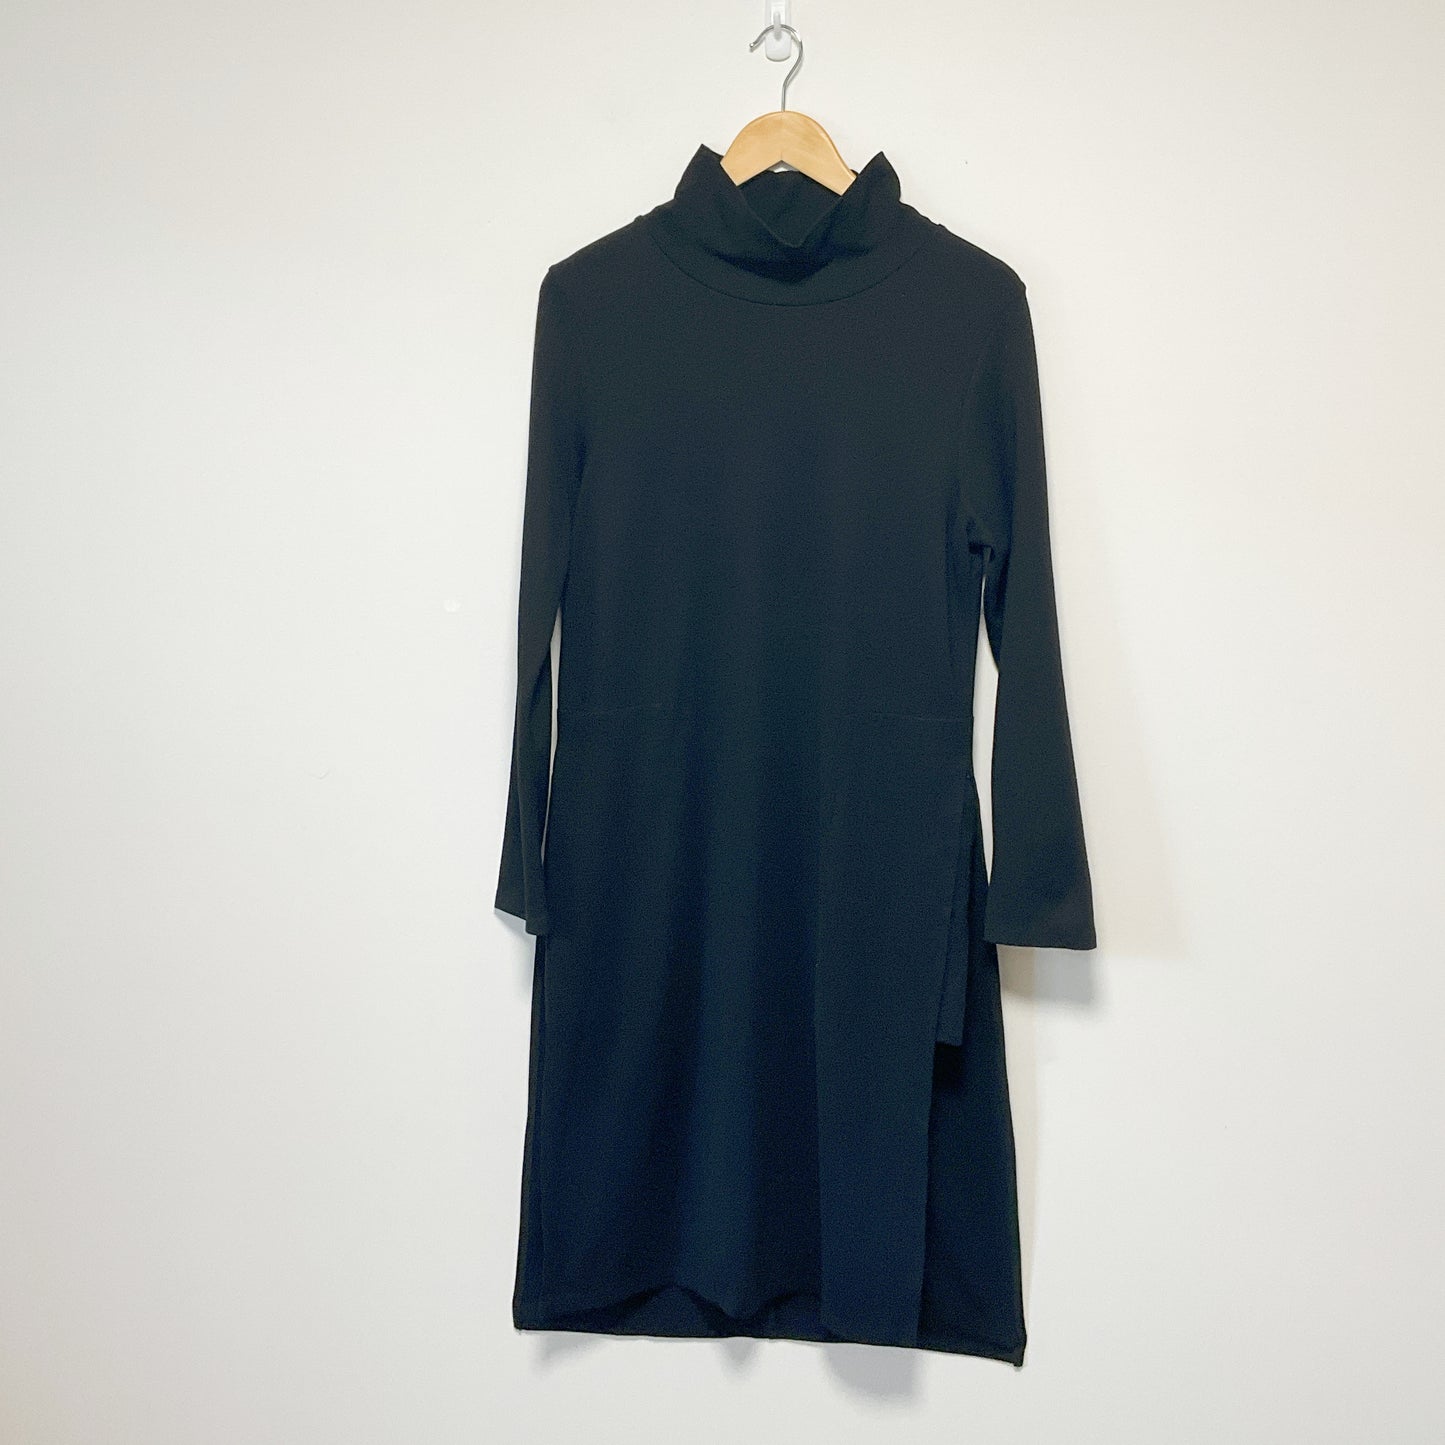 C.REED -  Long Sleeve Turtleneck Swing Dress